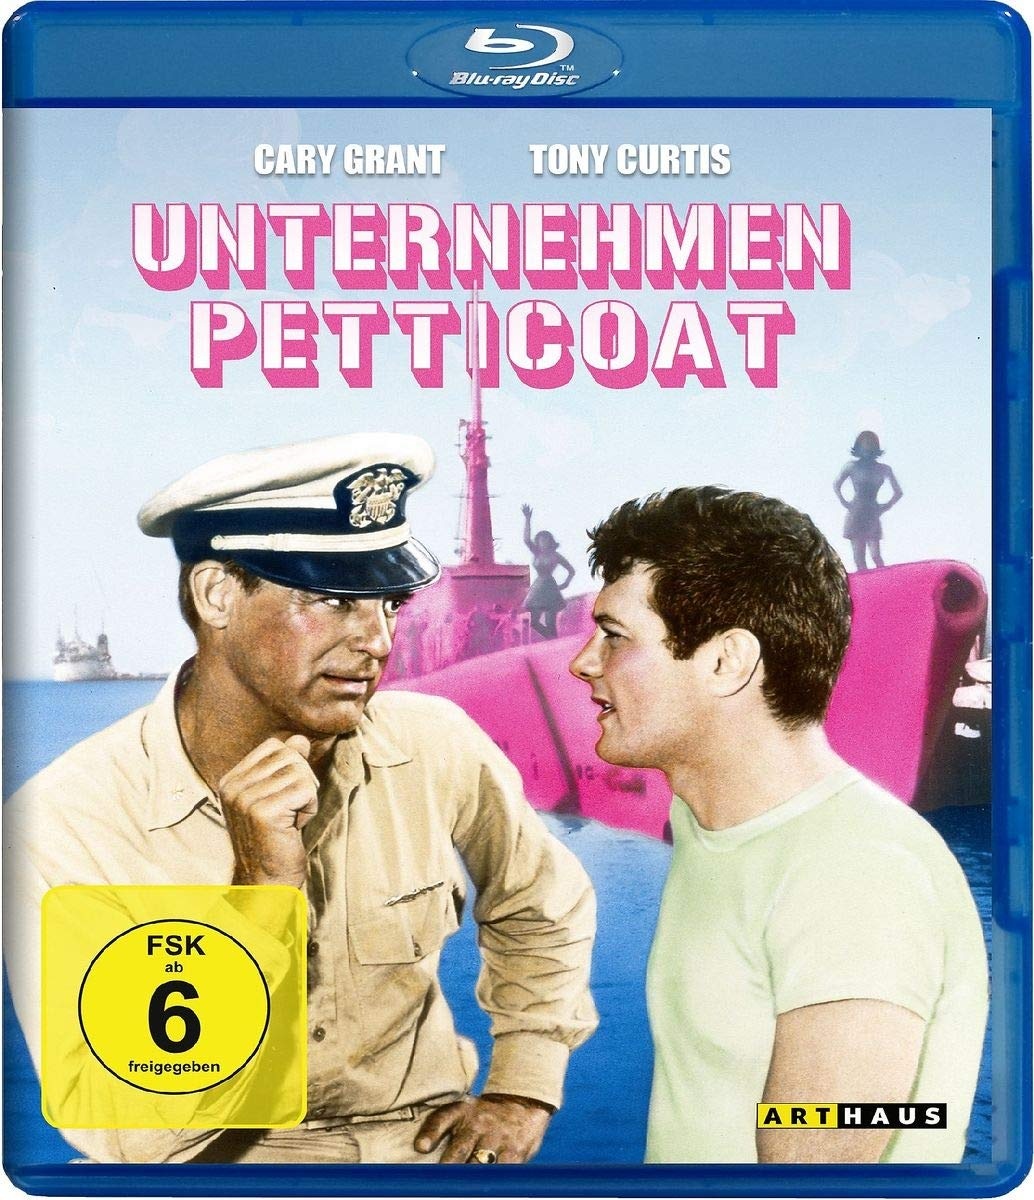 Unternehmen Petticoat [Blu-ray] (Neu differenzbesteuert)